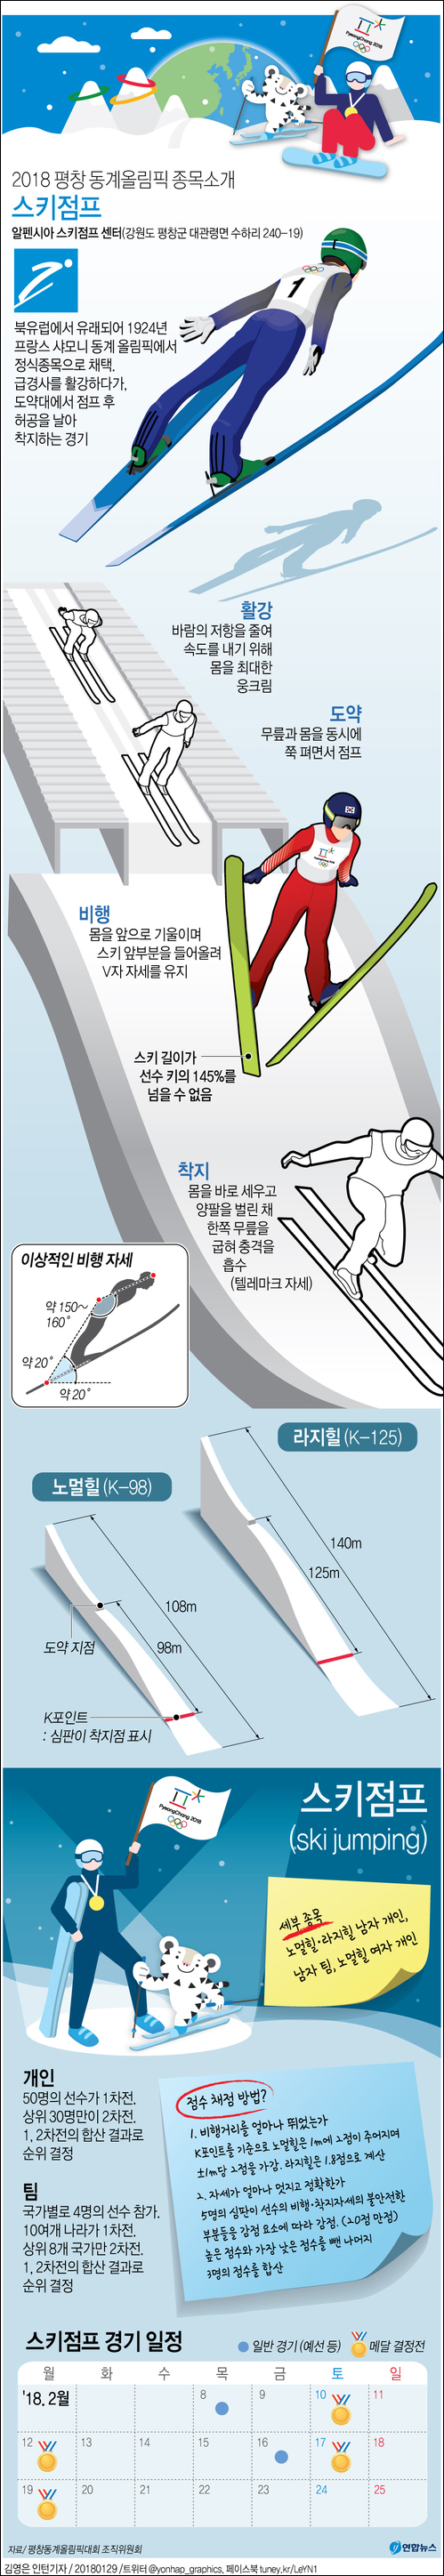 스키점프는 스키를 타고 급경사면을 최고 시속 100Km에 가까운 속도로 활강해 내려오다 도약대에서 점프를 통해 비행에 나선다. ⓒ 연합뉴스